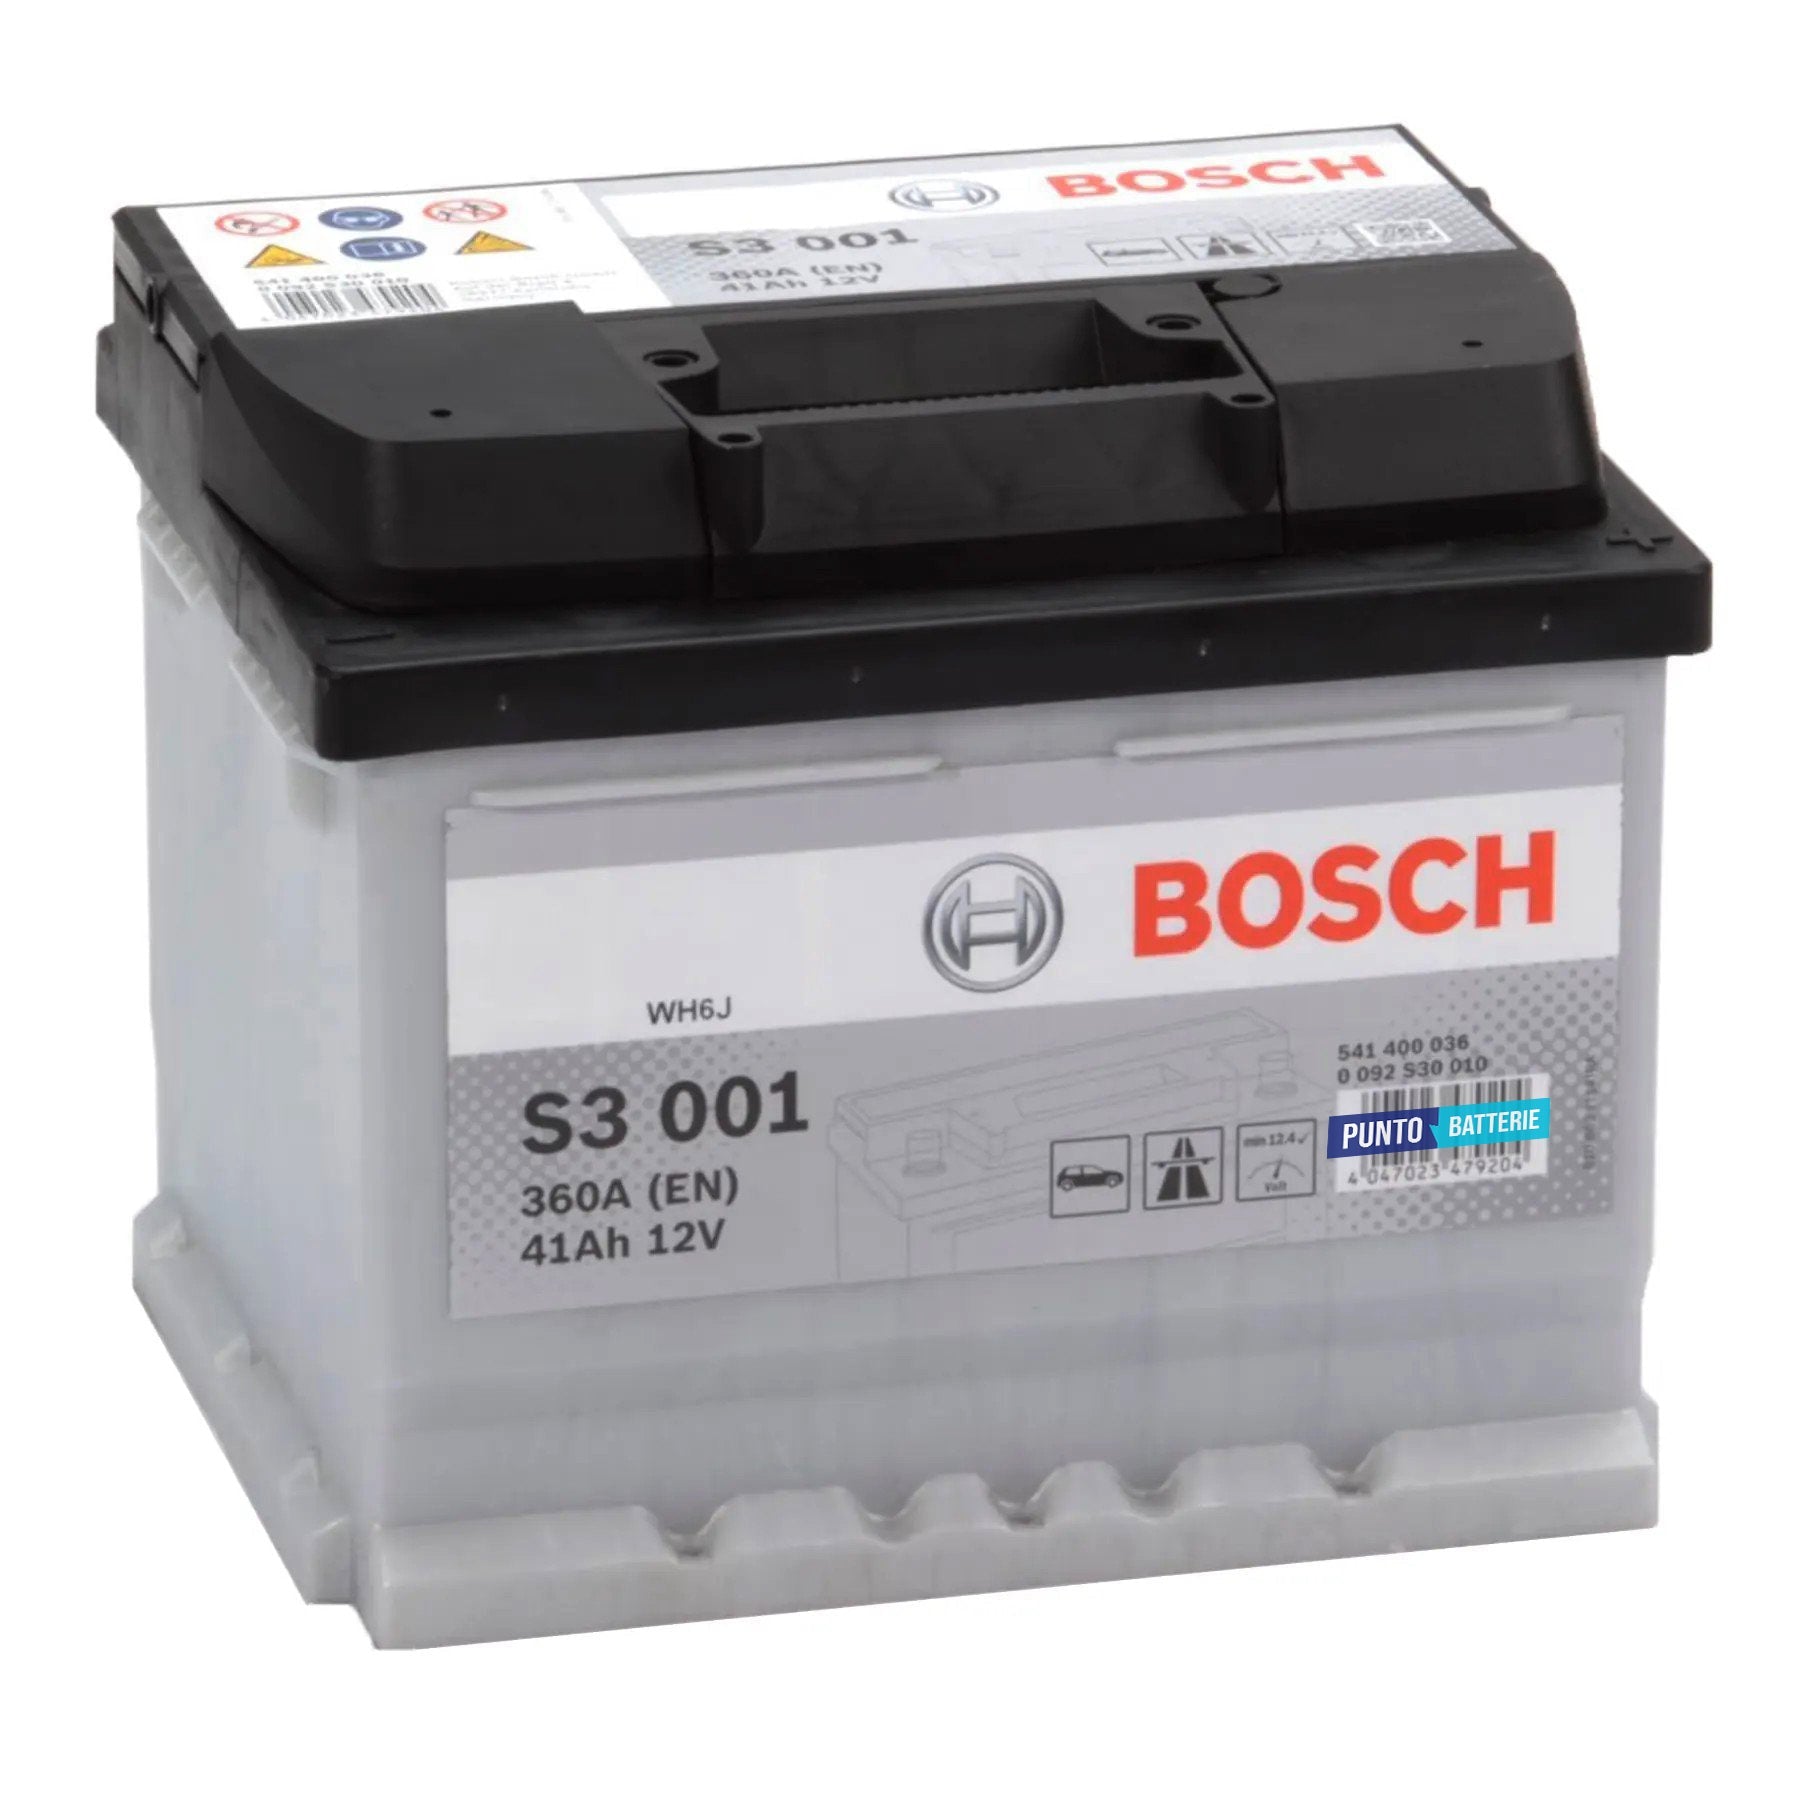 Batteria originale Bosch S3 S3 001, dimensioni 207 x 175 x 175, polo positivo a destra, 12 volt, 41 amperora, 360 ampere. Batteria per auto e veicoli leggeri.